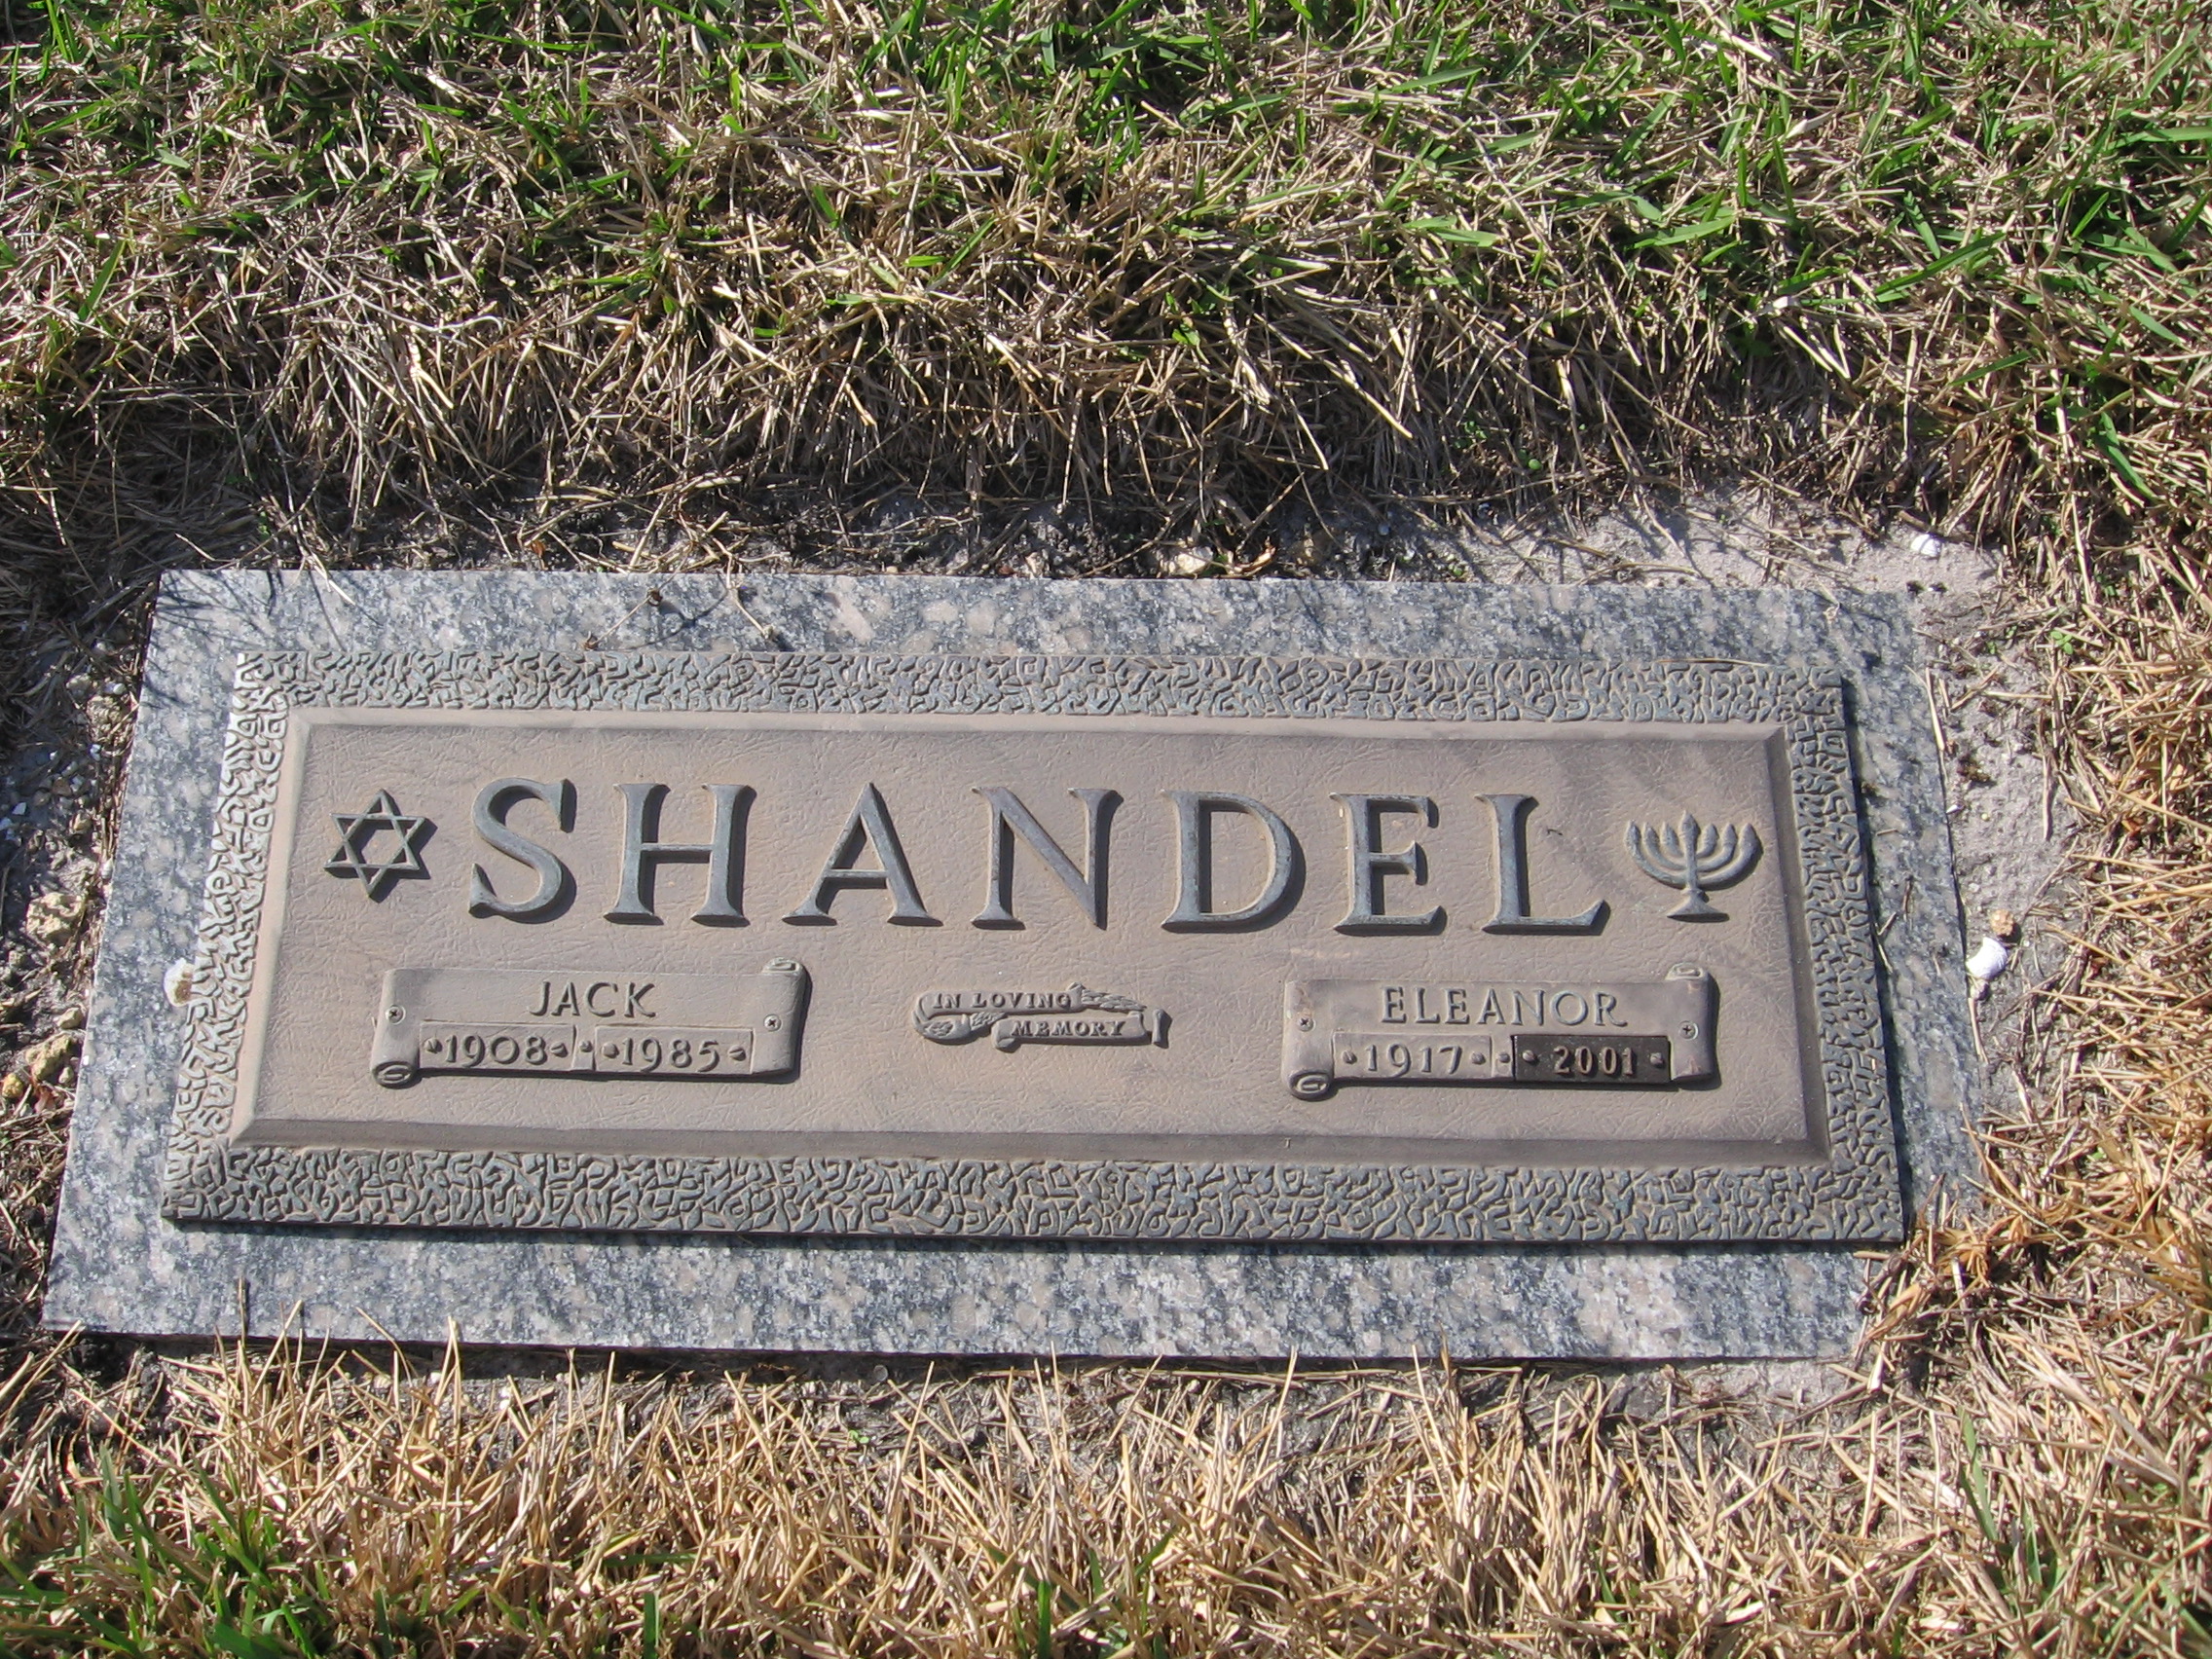 Jack Shandel